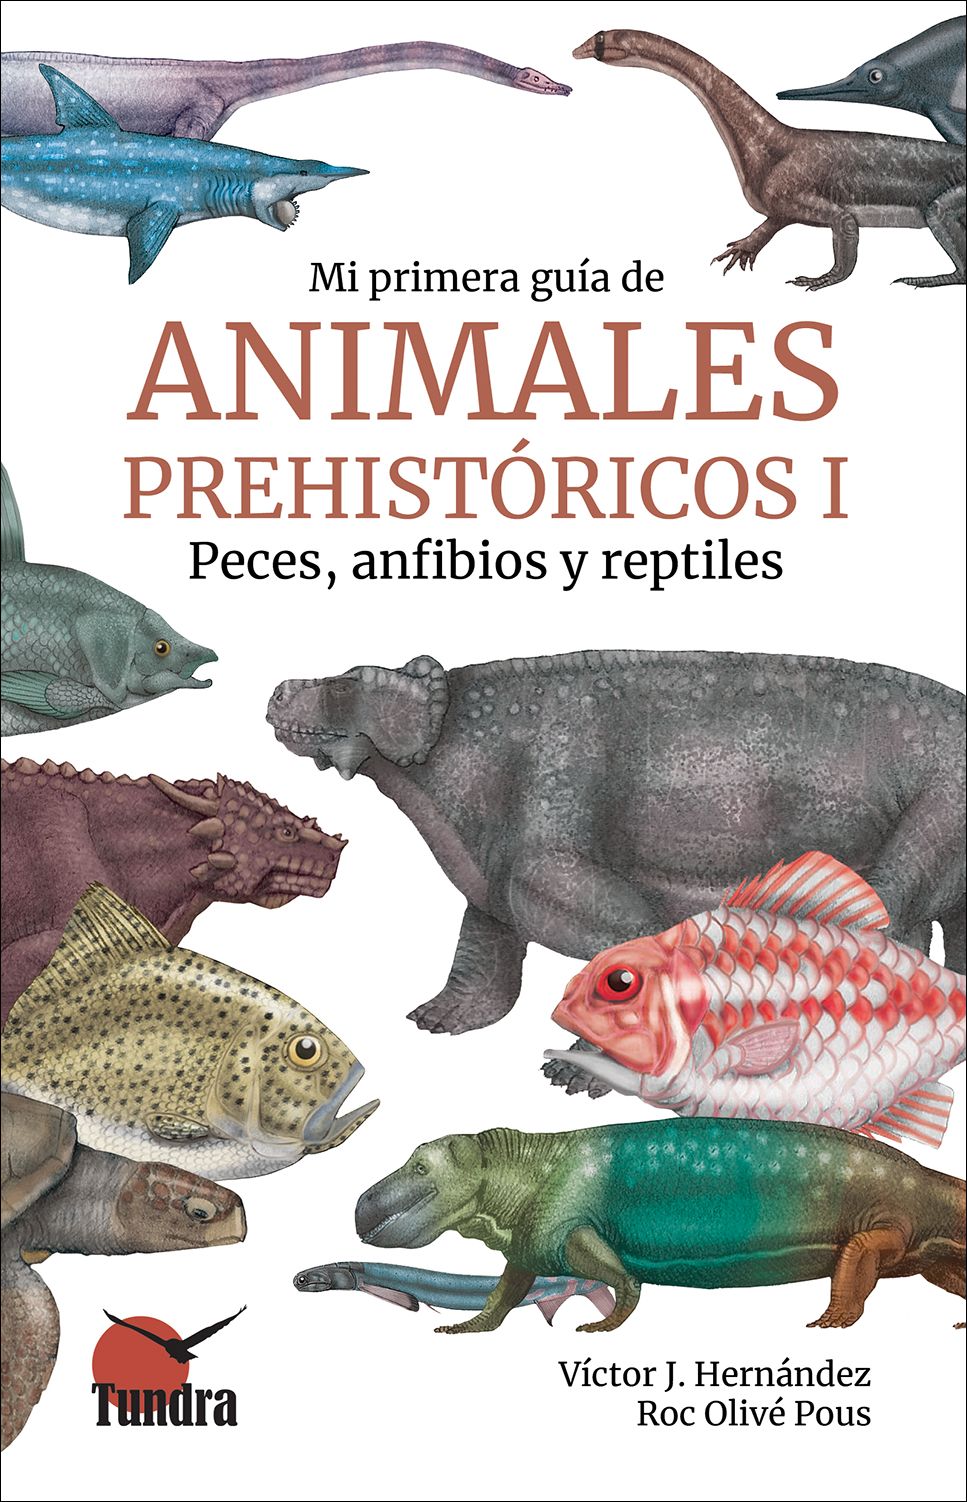 Libros: Mi primera Guía de Animales Prehistóricos I: peces, anfibios reptiles - DISPONIBLE 20 JULIO 2023 ¡HAZ YA TU PEDIDO!